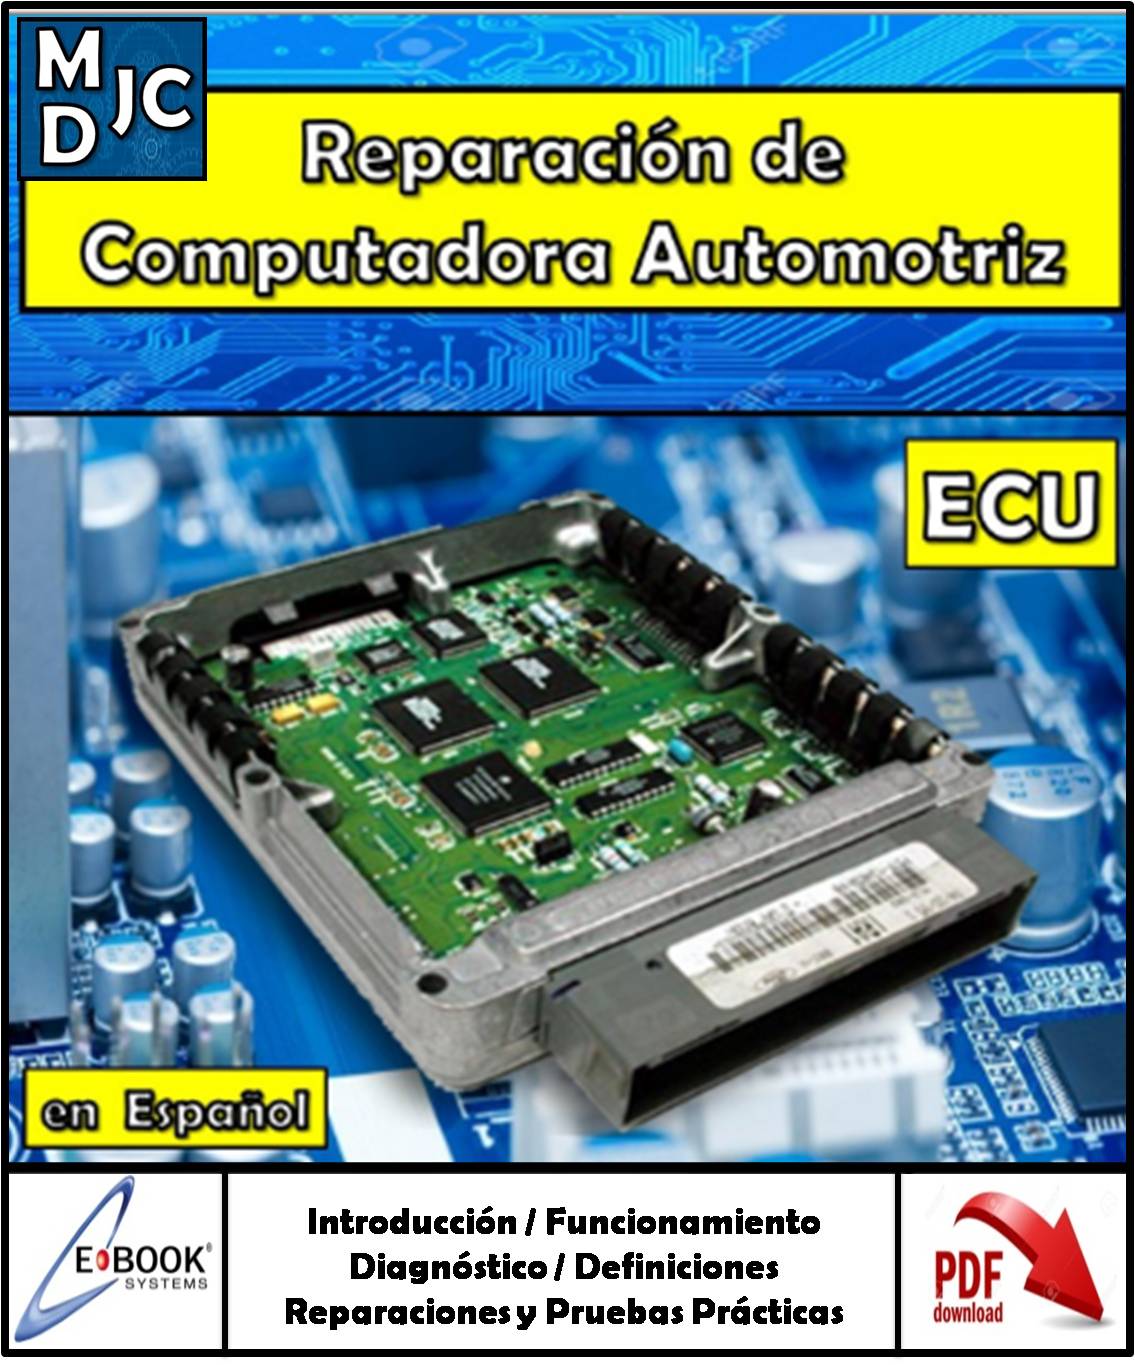 Curso Manual De Reparación Ecu Ecm Pcm Computadora Automotriz | MDJC -  MANUALES DE TALLER